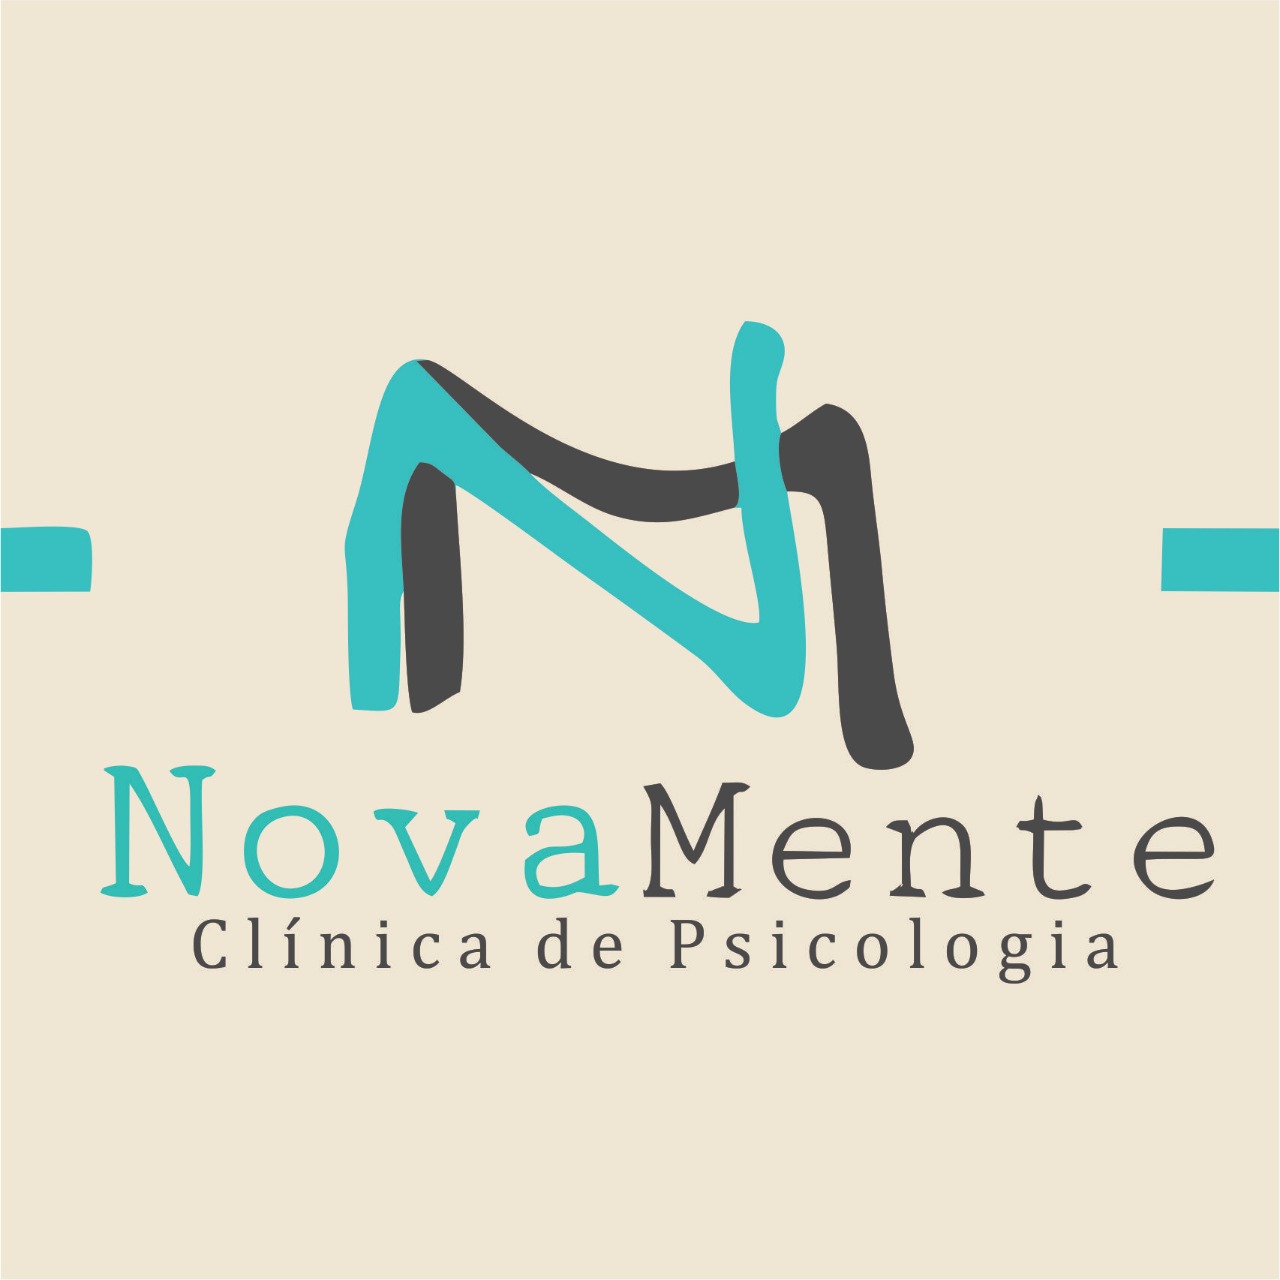 NovaMente Clinica de Psicologia